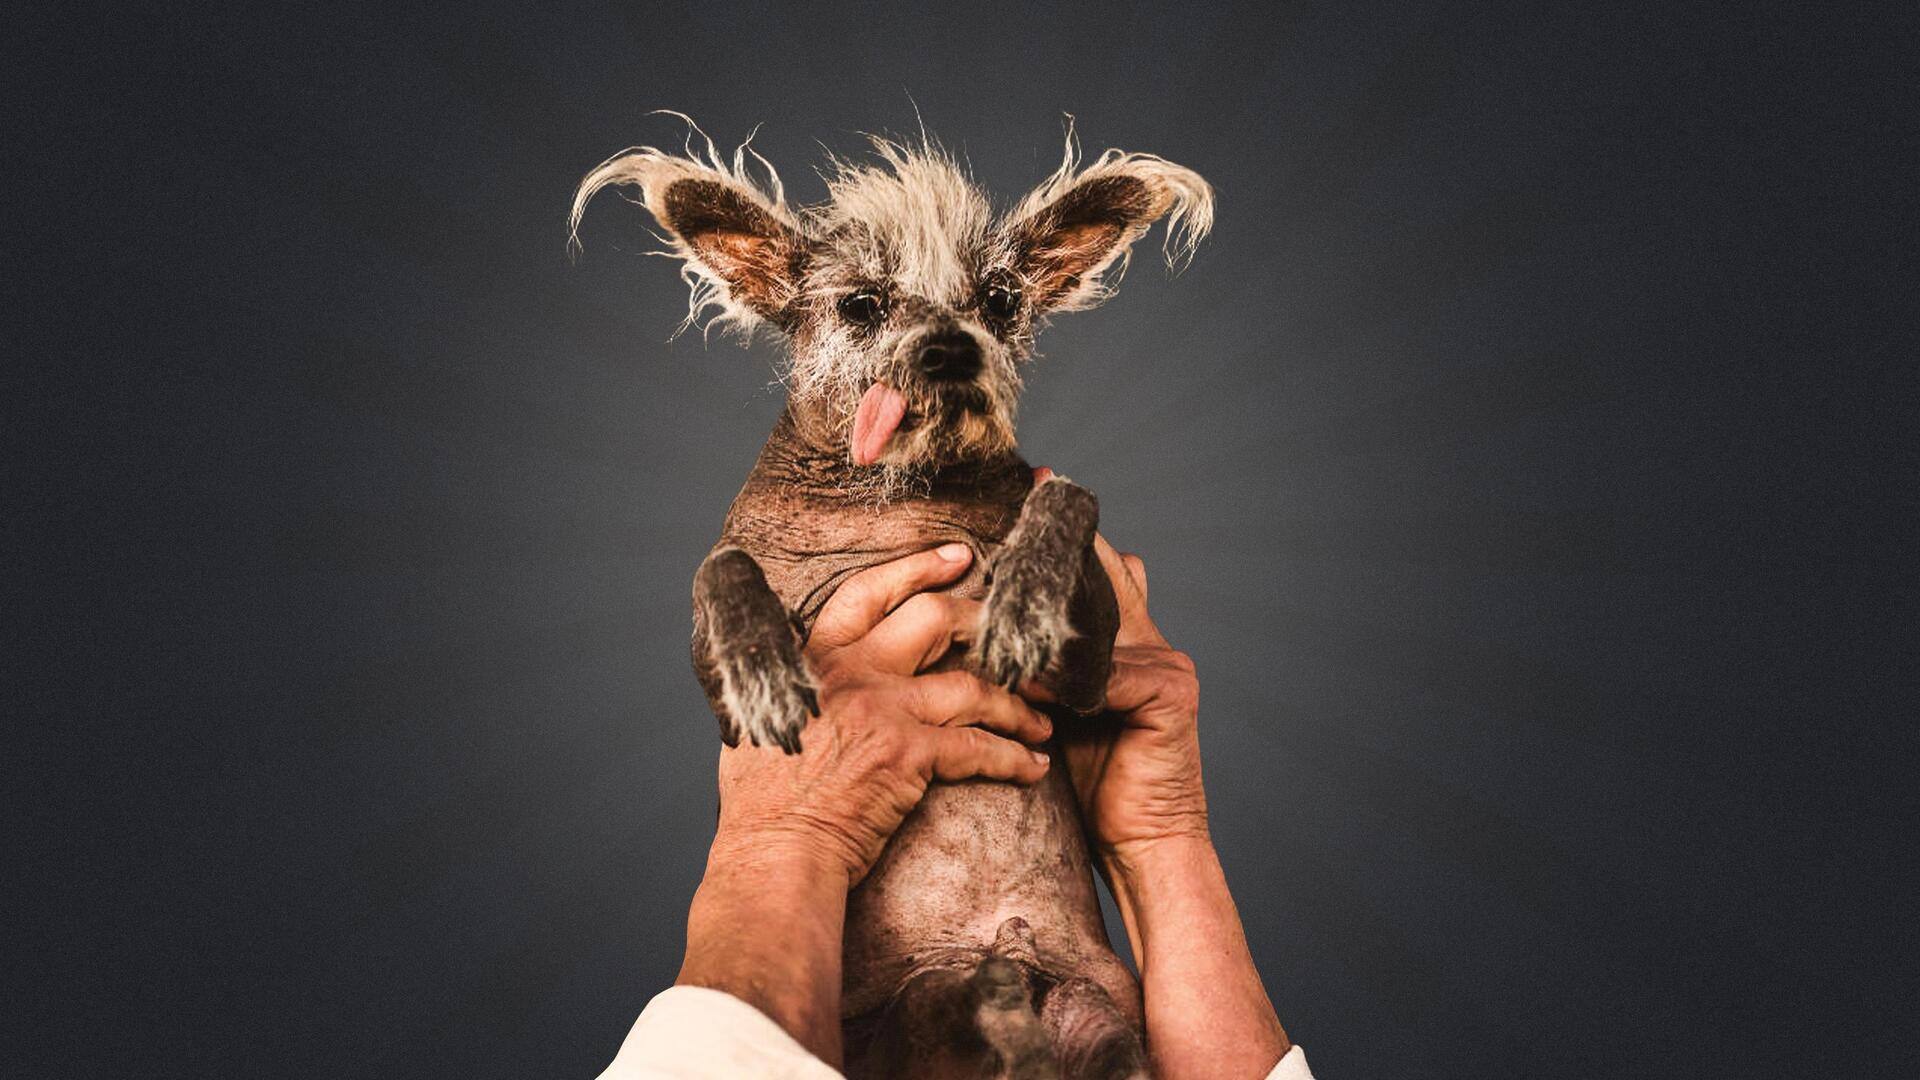 दुनिया का सबसे बदसूरत कुत्ता है 'स्कूटर', लाखों रुपये और ट्रॉफी से किया गया सम्मानित